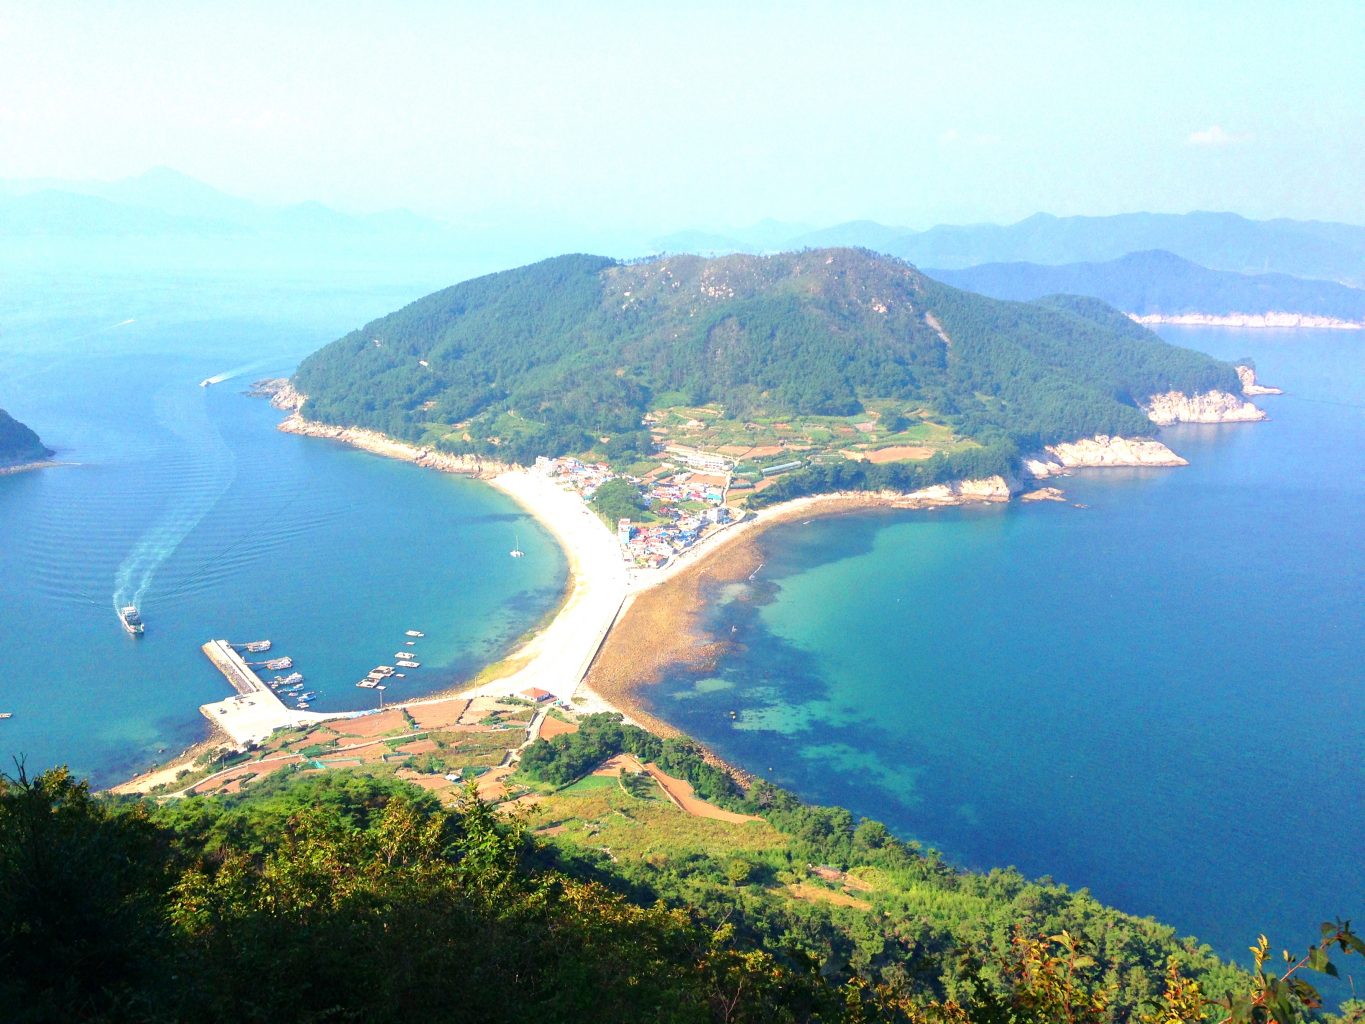 Bijindo Island is one of the great islands of Korea